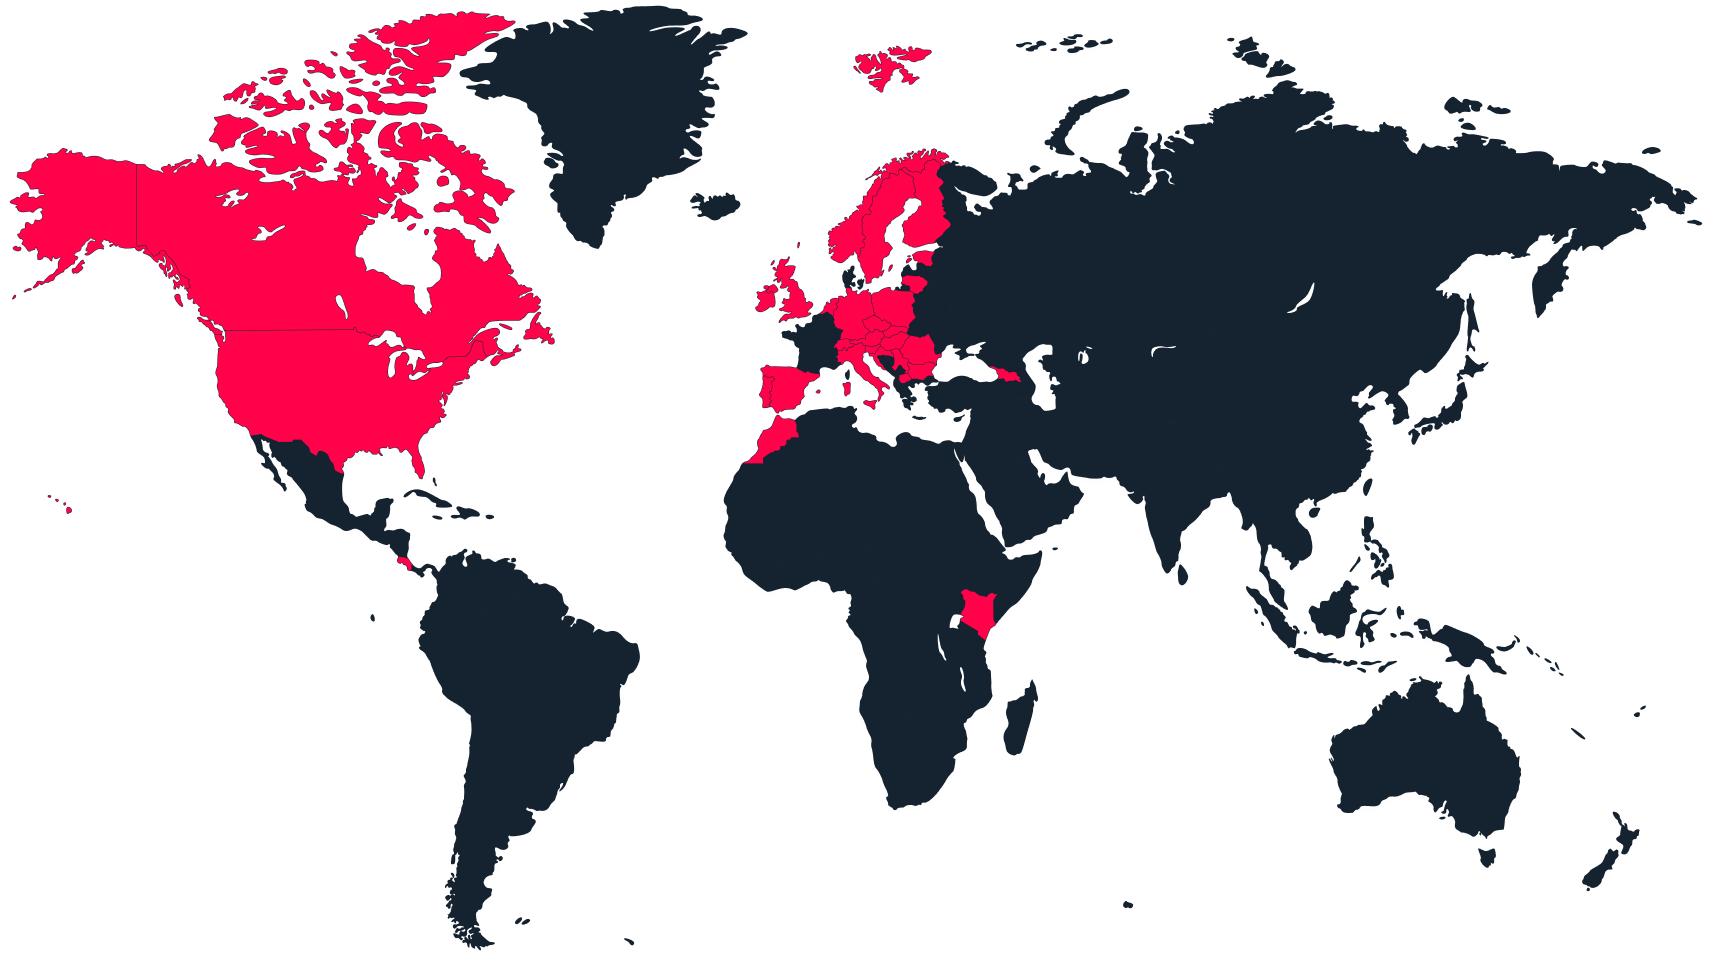 Mapa świata z aktywnymi krajami zaznaczonymi na czerwono